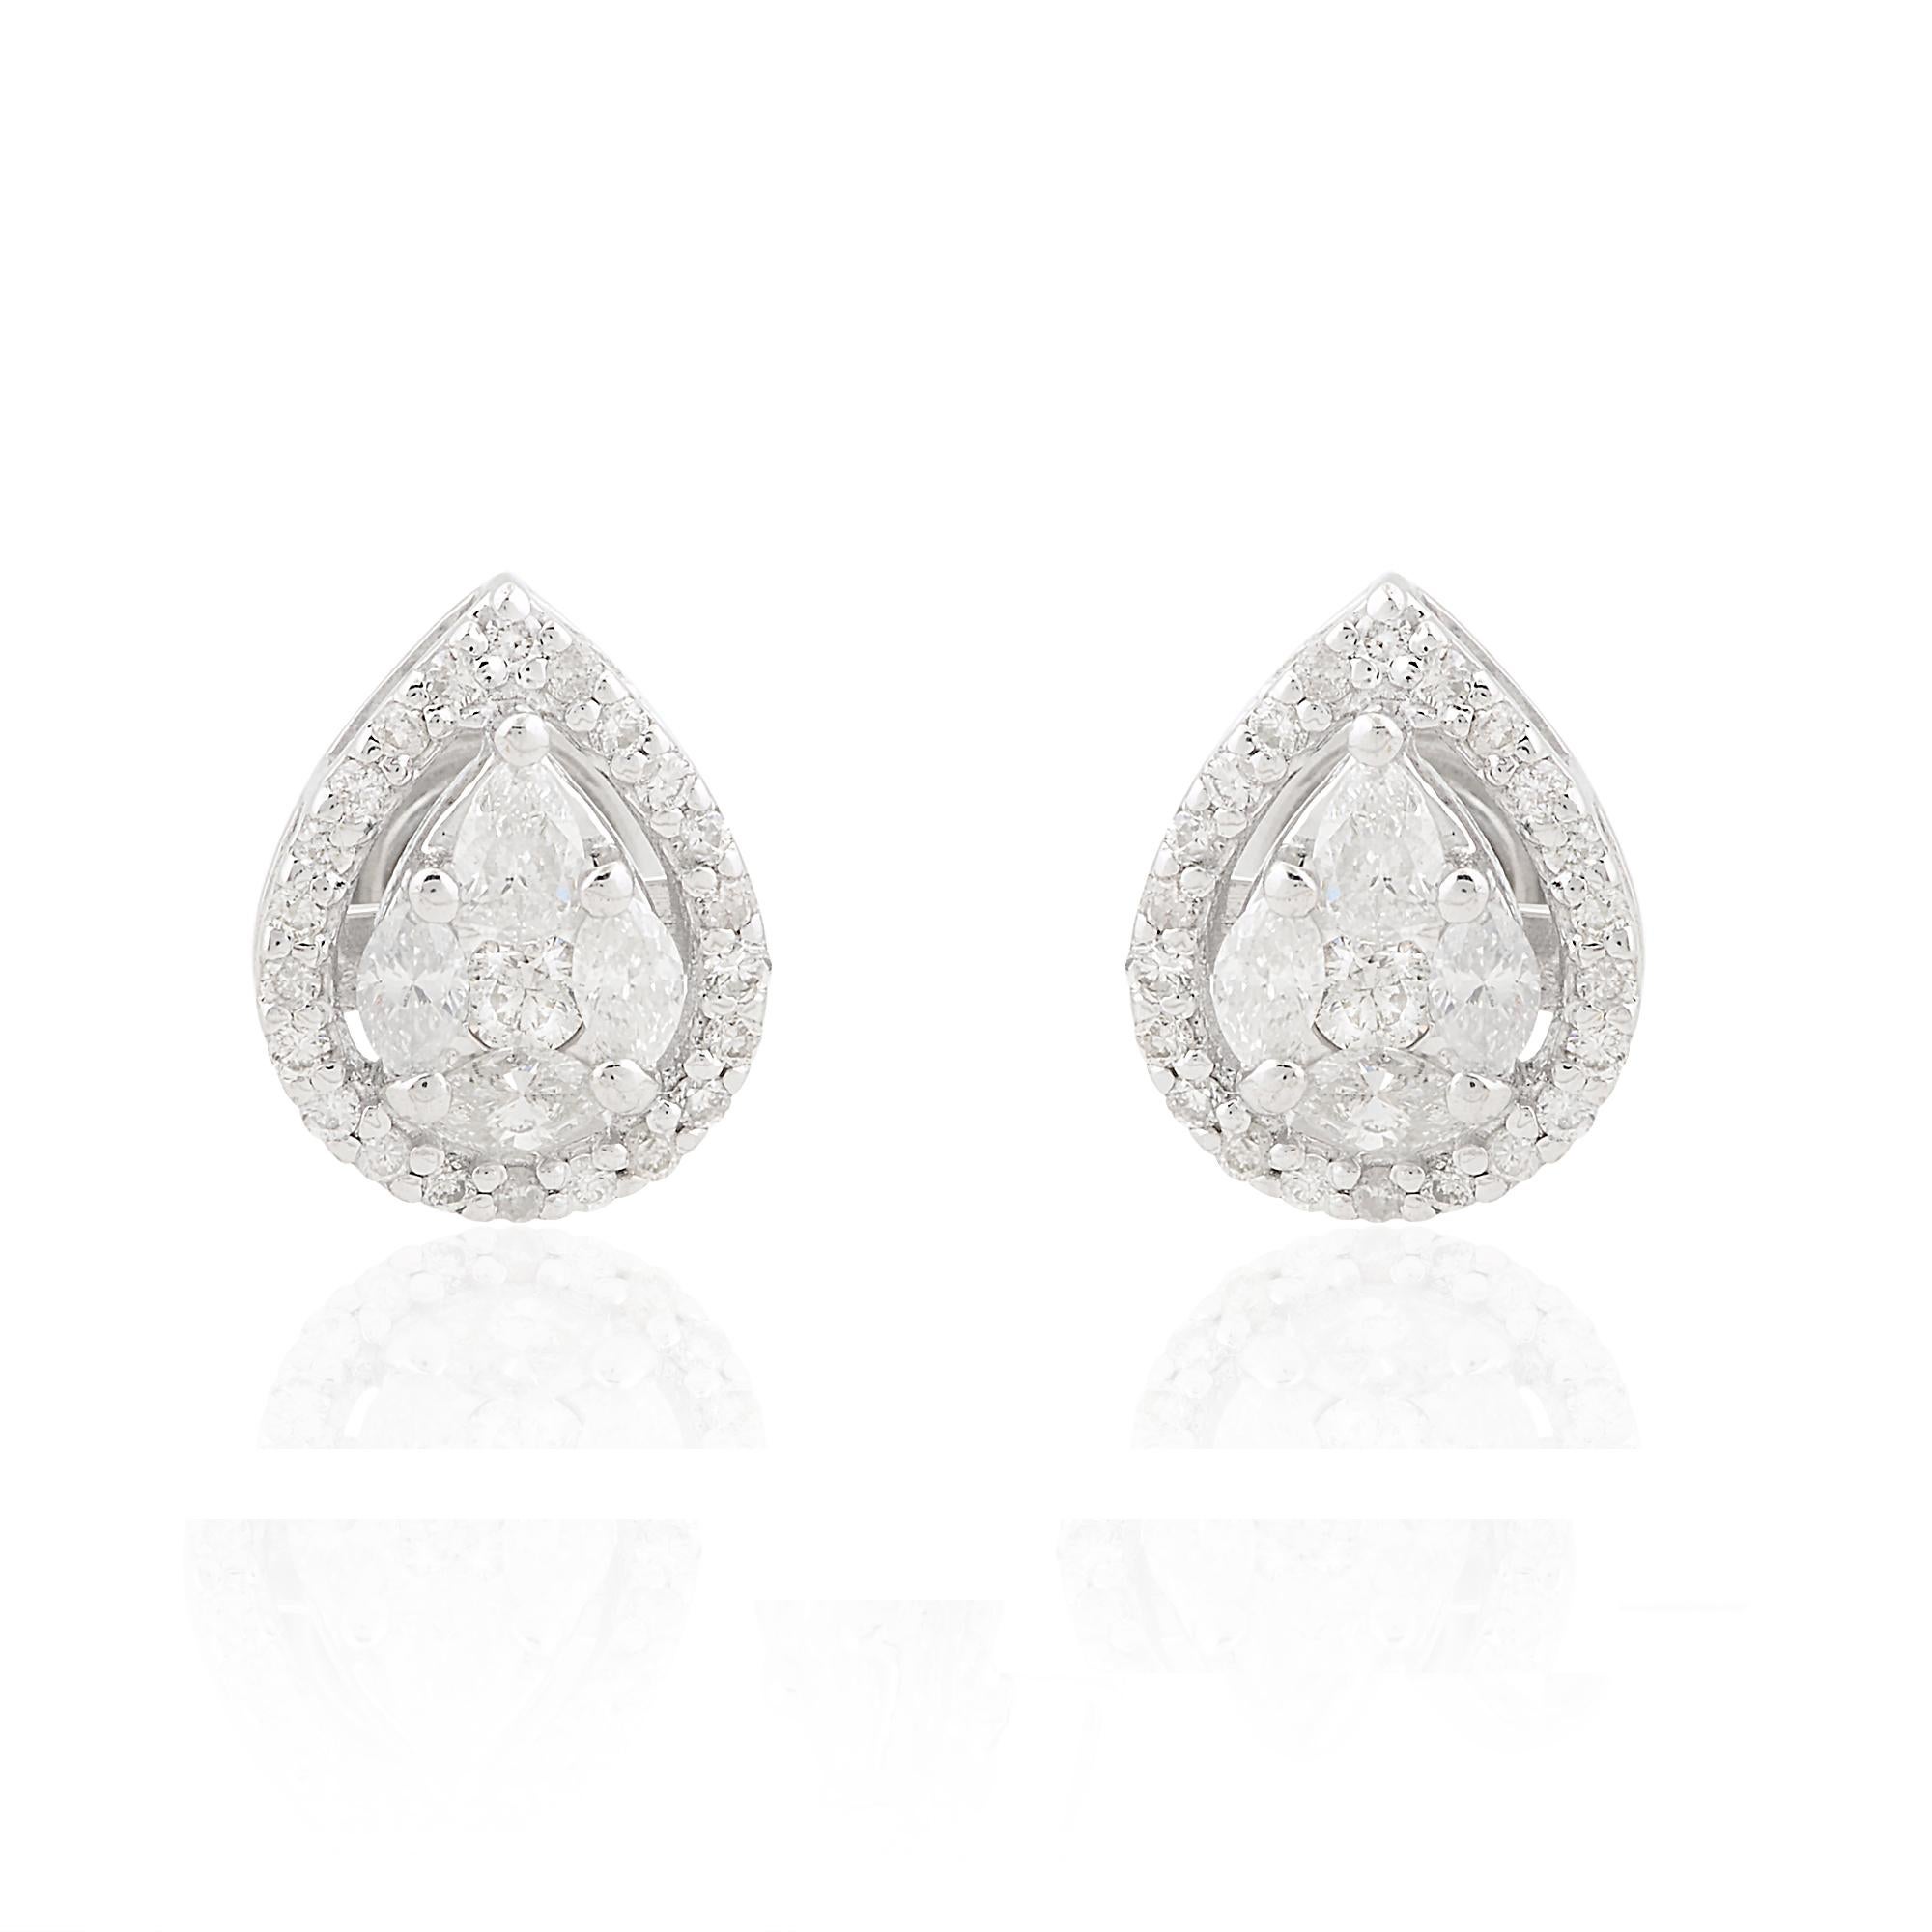 Lassen Sie sich von der zeitlosen Eleganz dieser atemberaubenden birnenförmigen Diamantohrstecker verzaubern, die mit viel Liebe zum Detail und unvergleichlicher Finesse gefertigt wurden. Jeder Ohrring besteht aus einem prächtigen Diamanten im